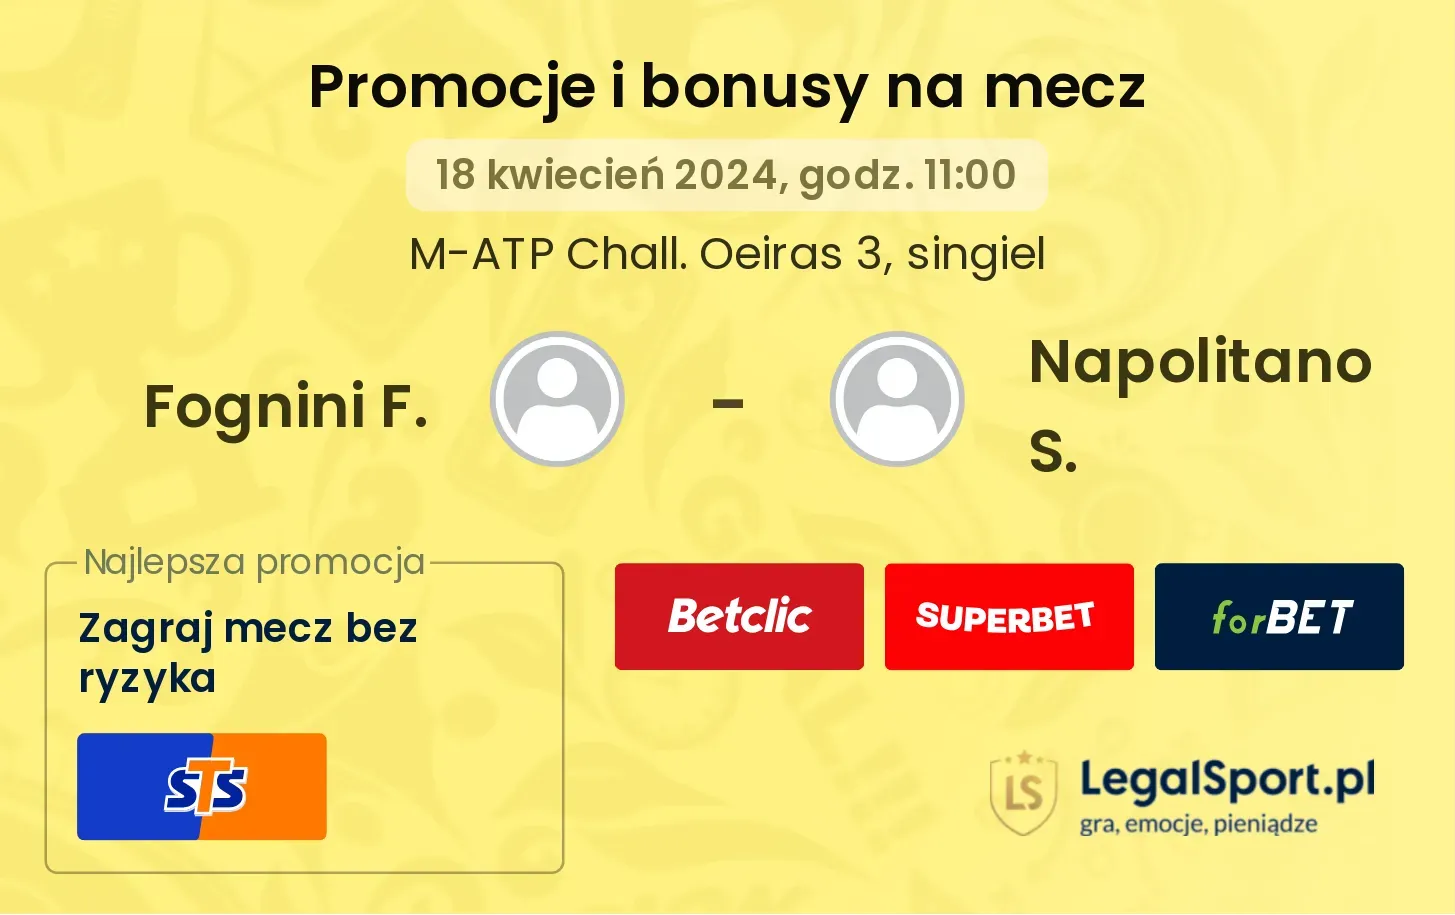 Fognini F. - Napolitano S. promocje bonusy na mecz